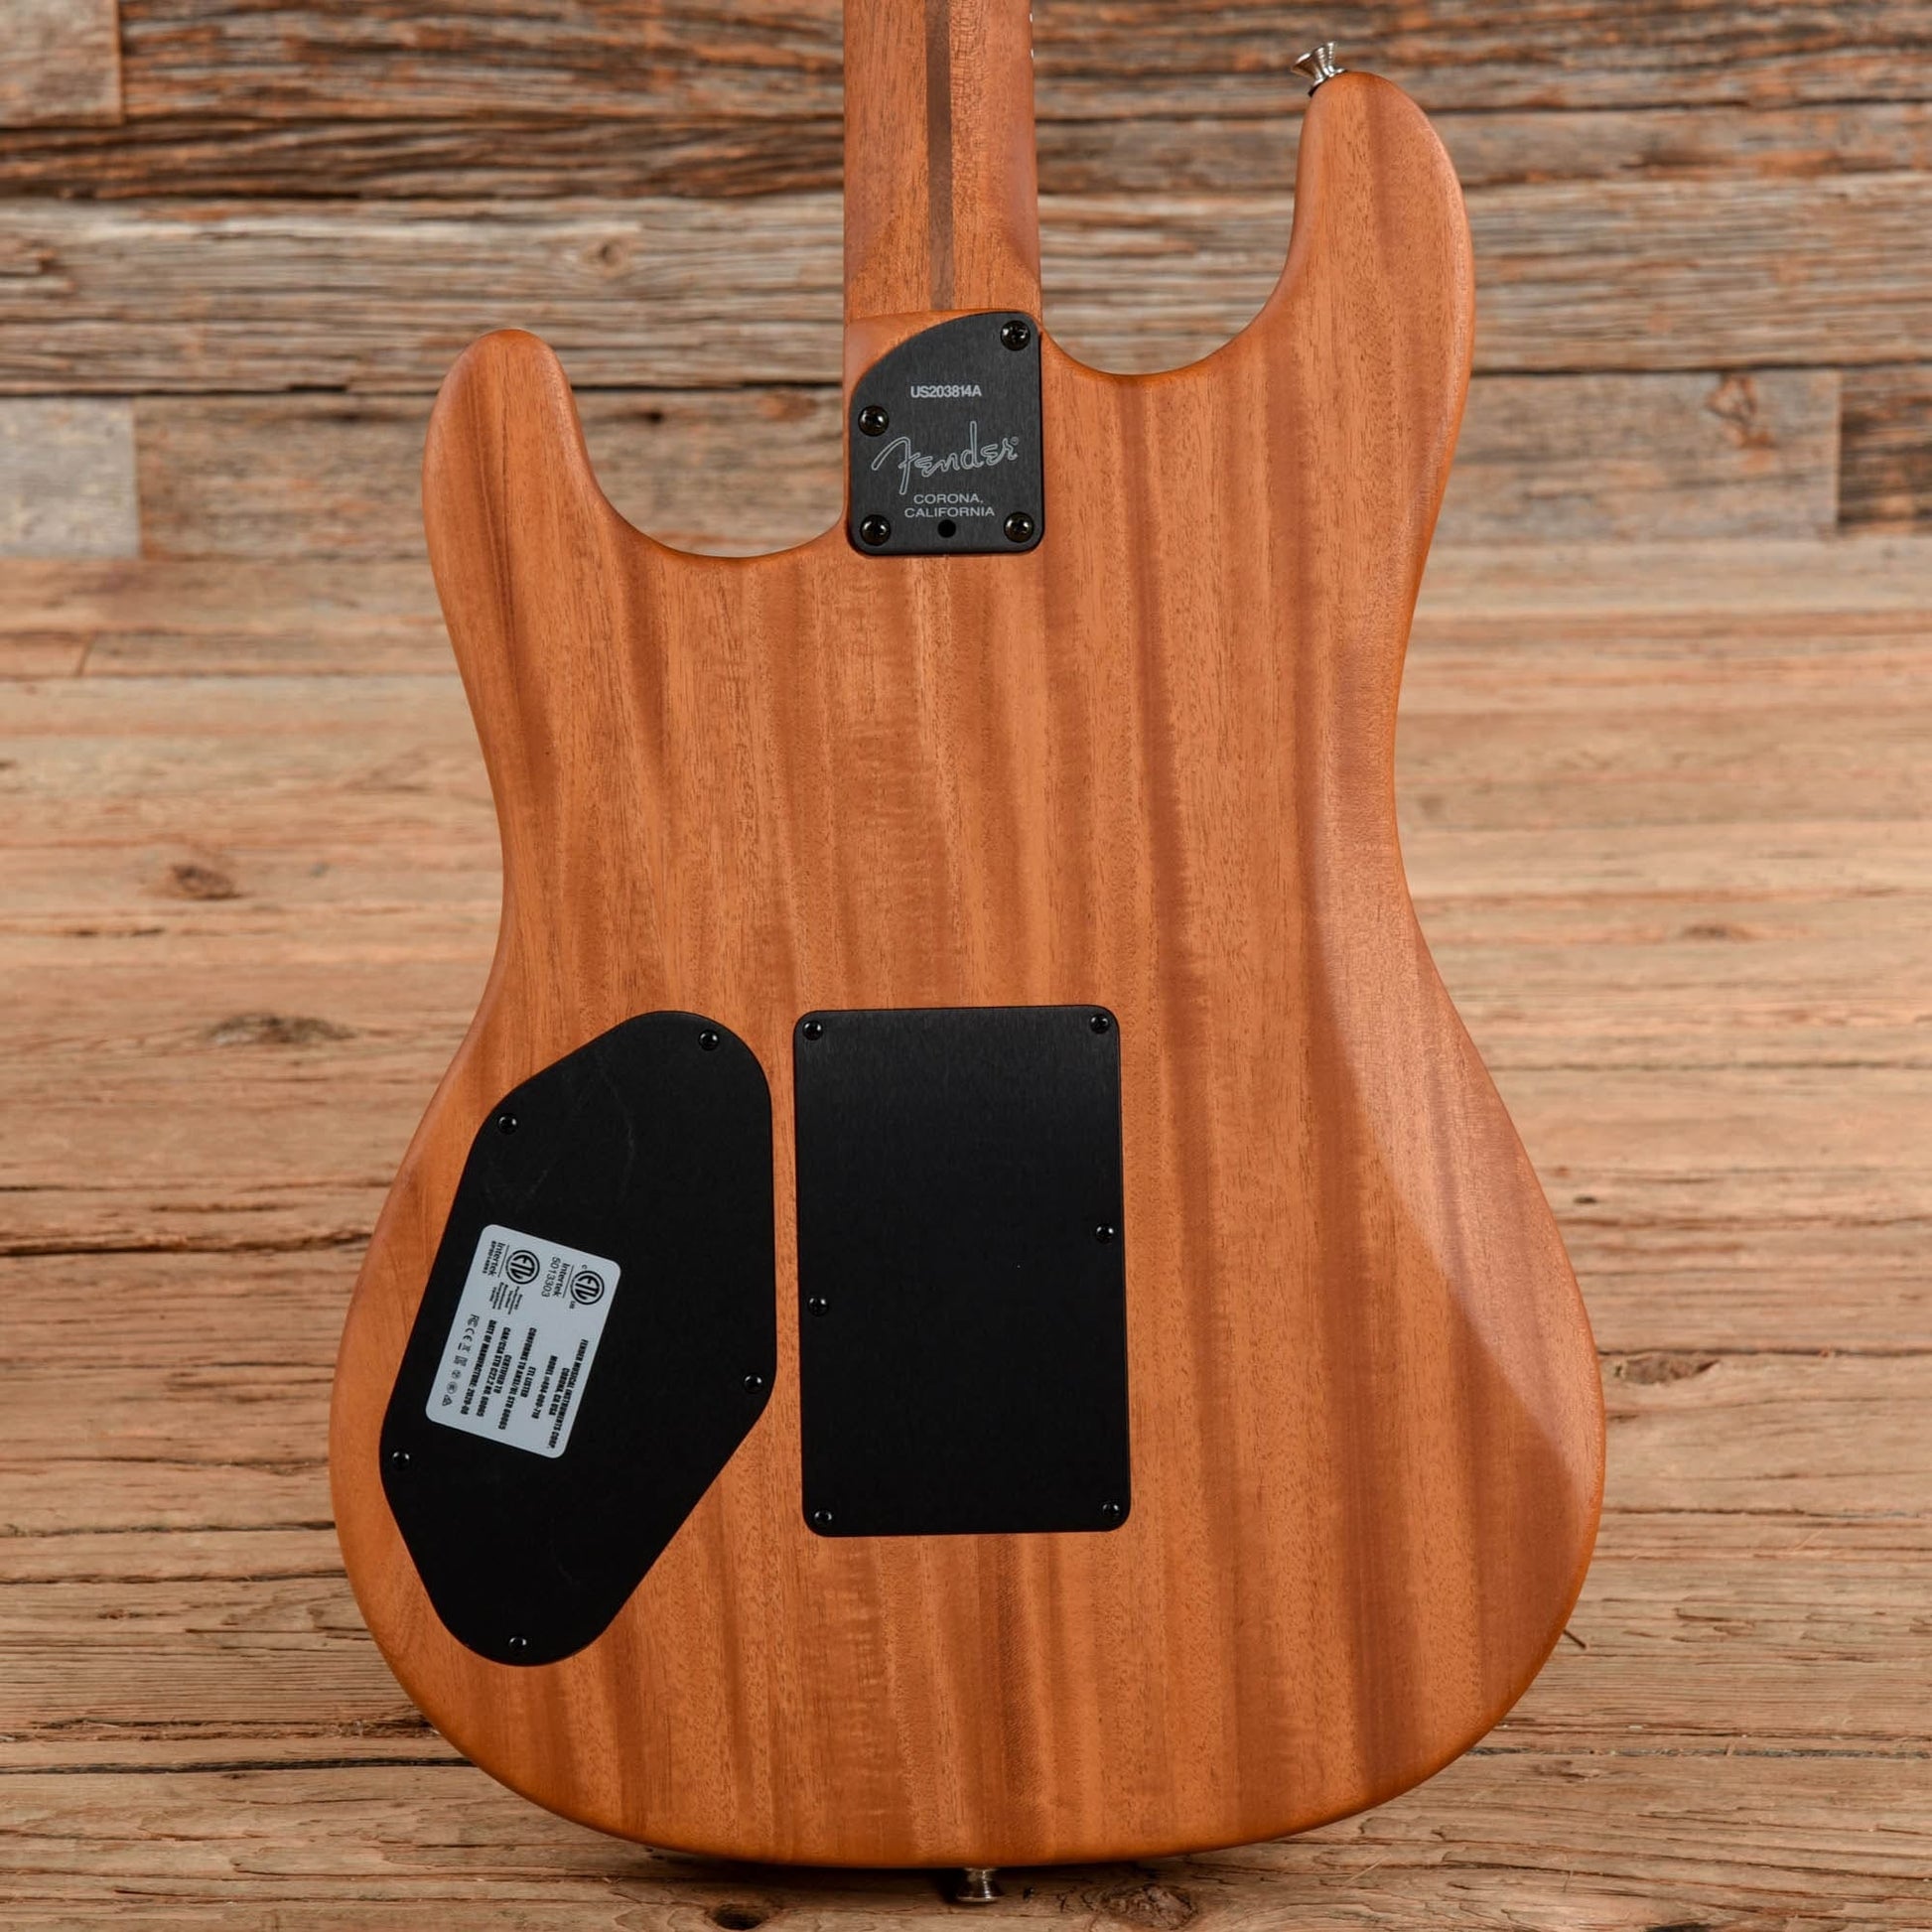 Fender American Acoustasonic Stratocaster Dakota Red 2020 Acoustic Guitars / Built-in Electronics